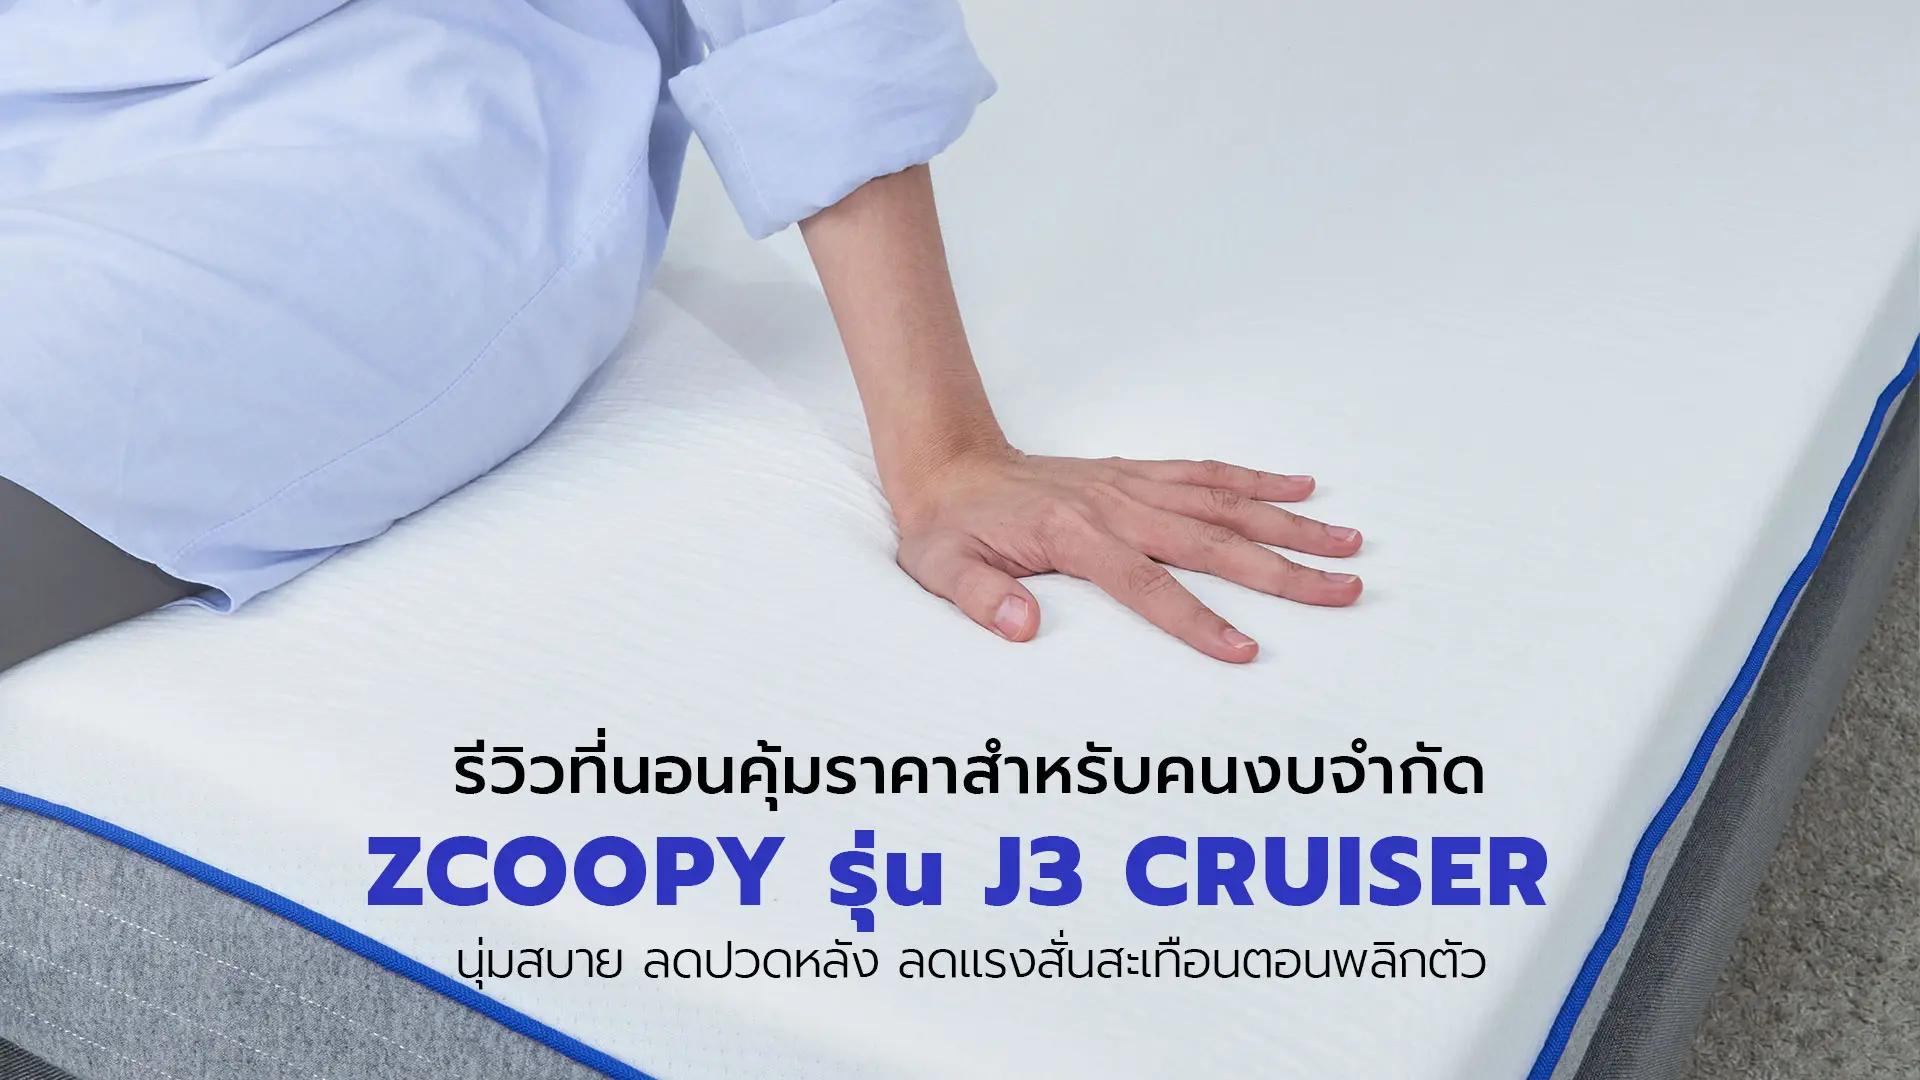 ที่นอน Zcoopy J3 Cruiser ราคาถูกแต่คุ้มสำหรับคนงบน้อย